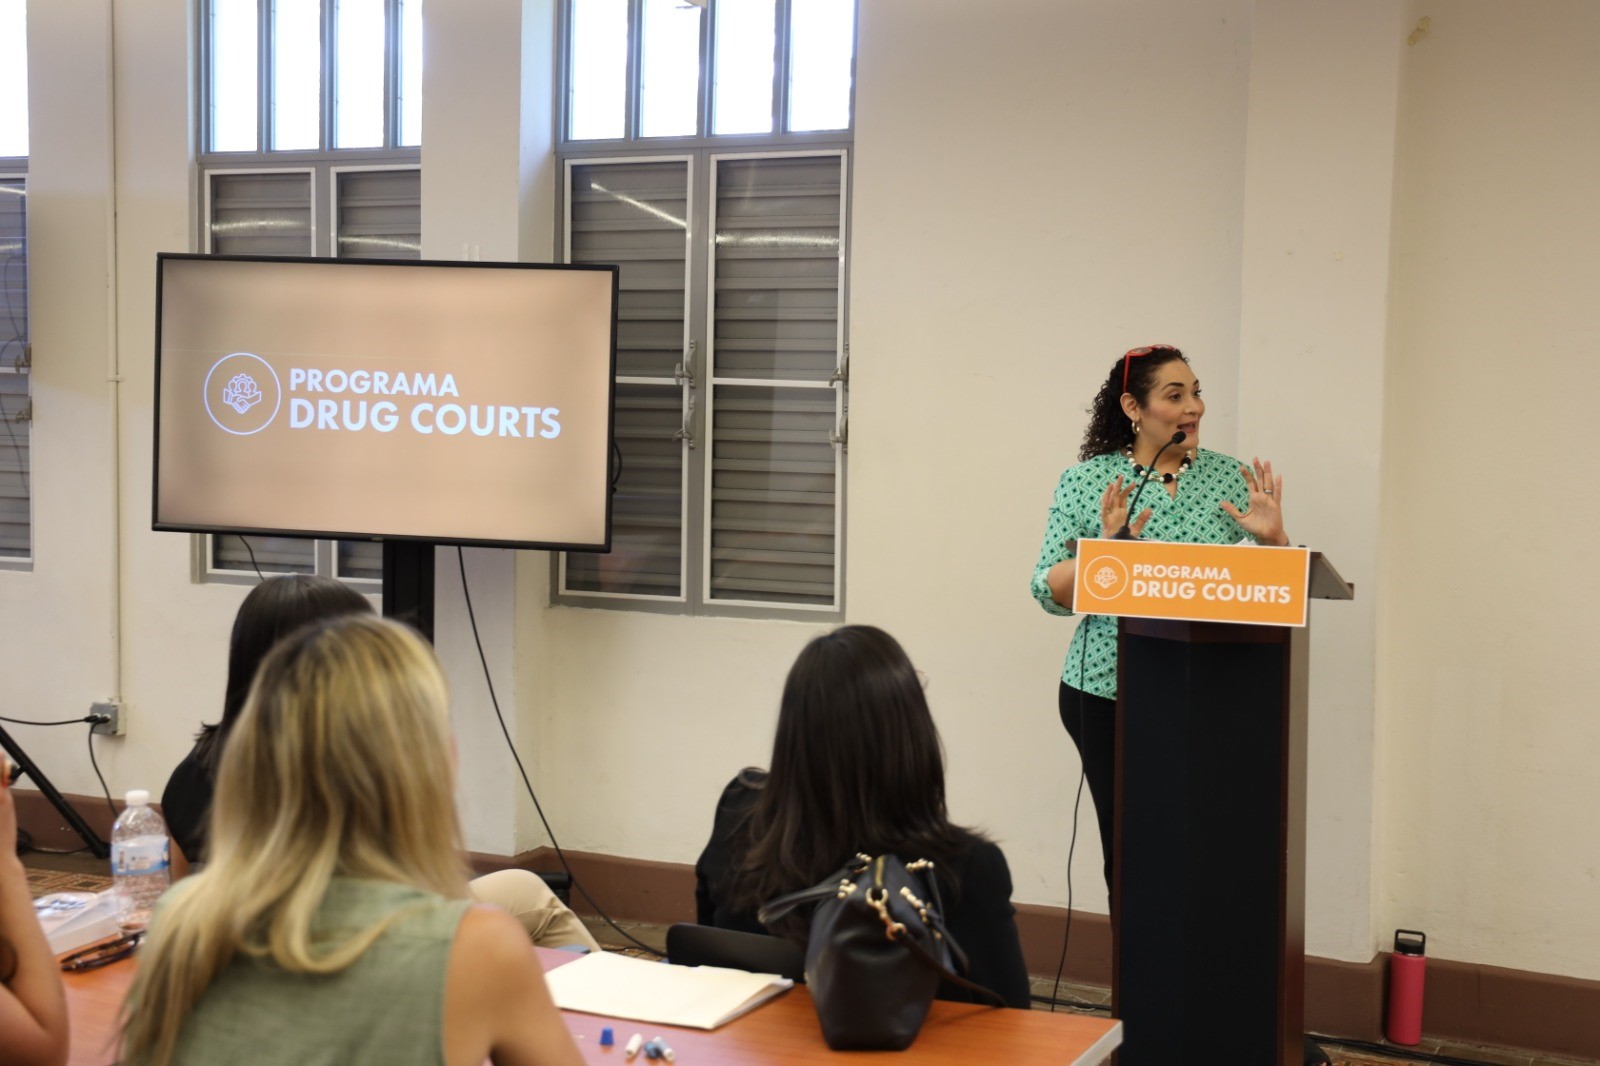 El componente intergubernamental del Programa Drug Courts participó de un taller que ofreció la Dra. Ilia Vázquez Gascot titulado Intensiones y voluntades: El reto de un servicio ajustado a las necesidades.